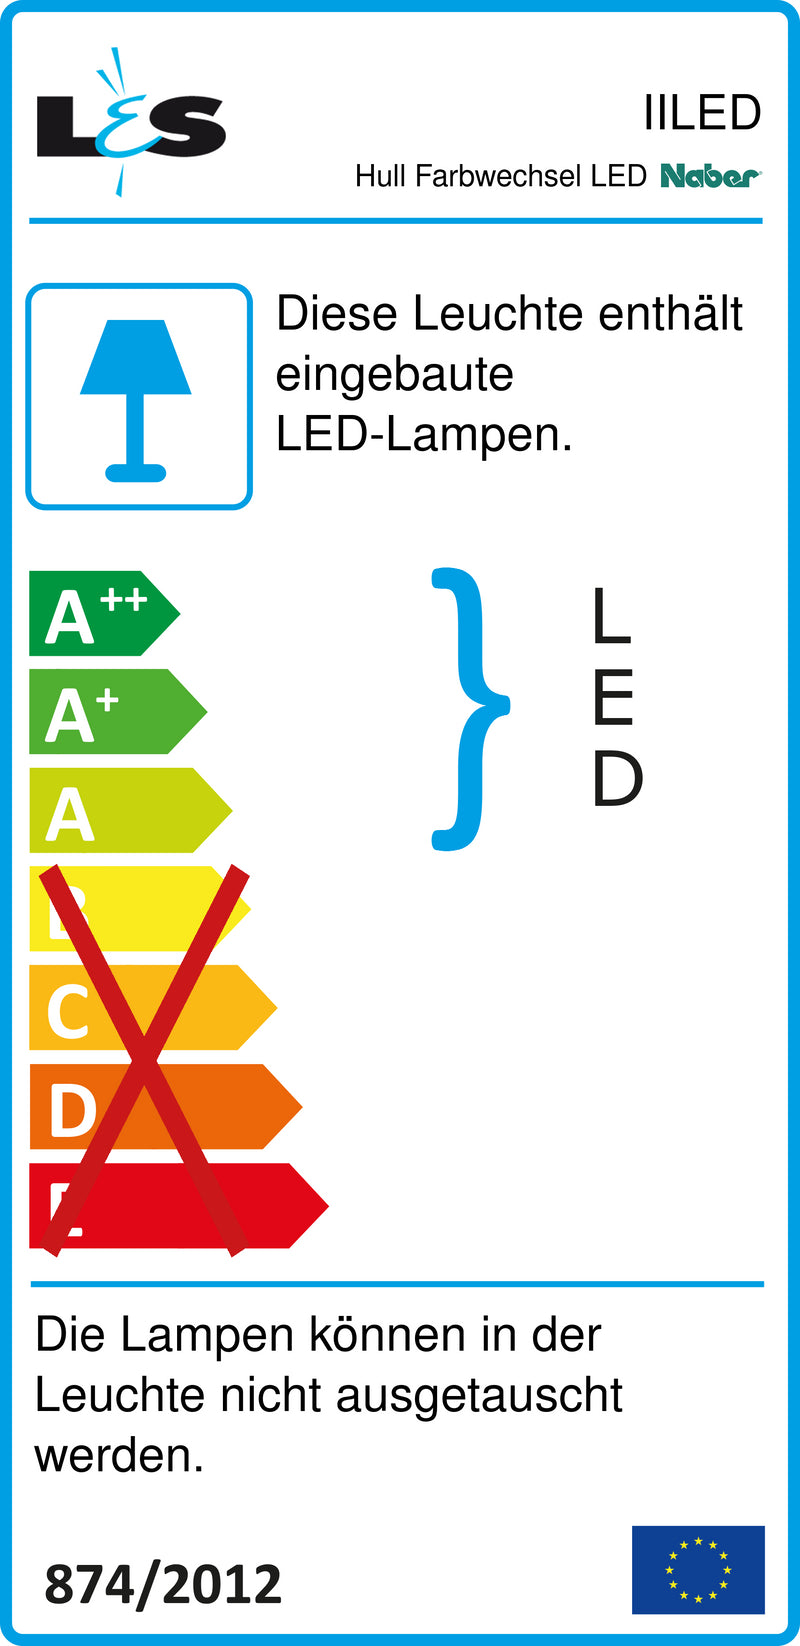 E-Label zu Zeichnung zu Hull Farbwechsel LED als Variante Set-3, edelstahlfarbig von Naber GmbH in der Kategorie Lichttechnik in Österreich auf conceptshop.at